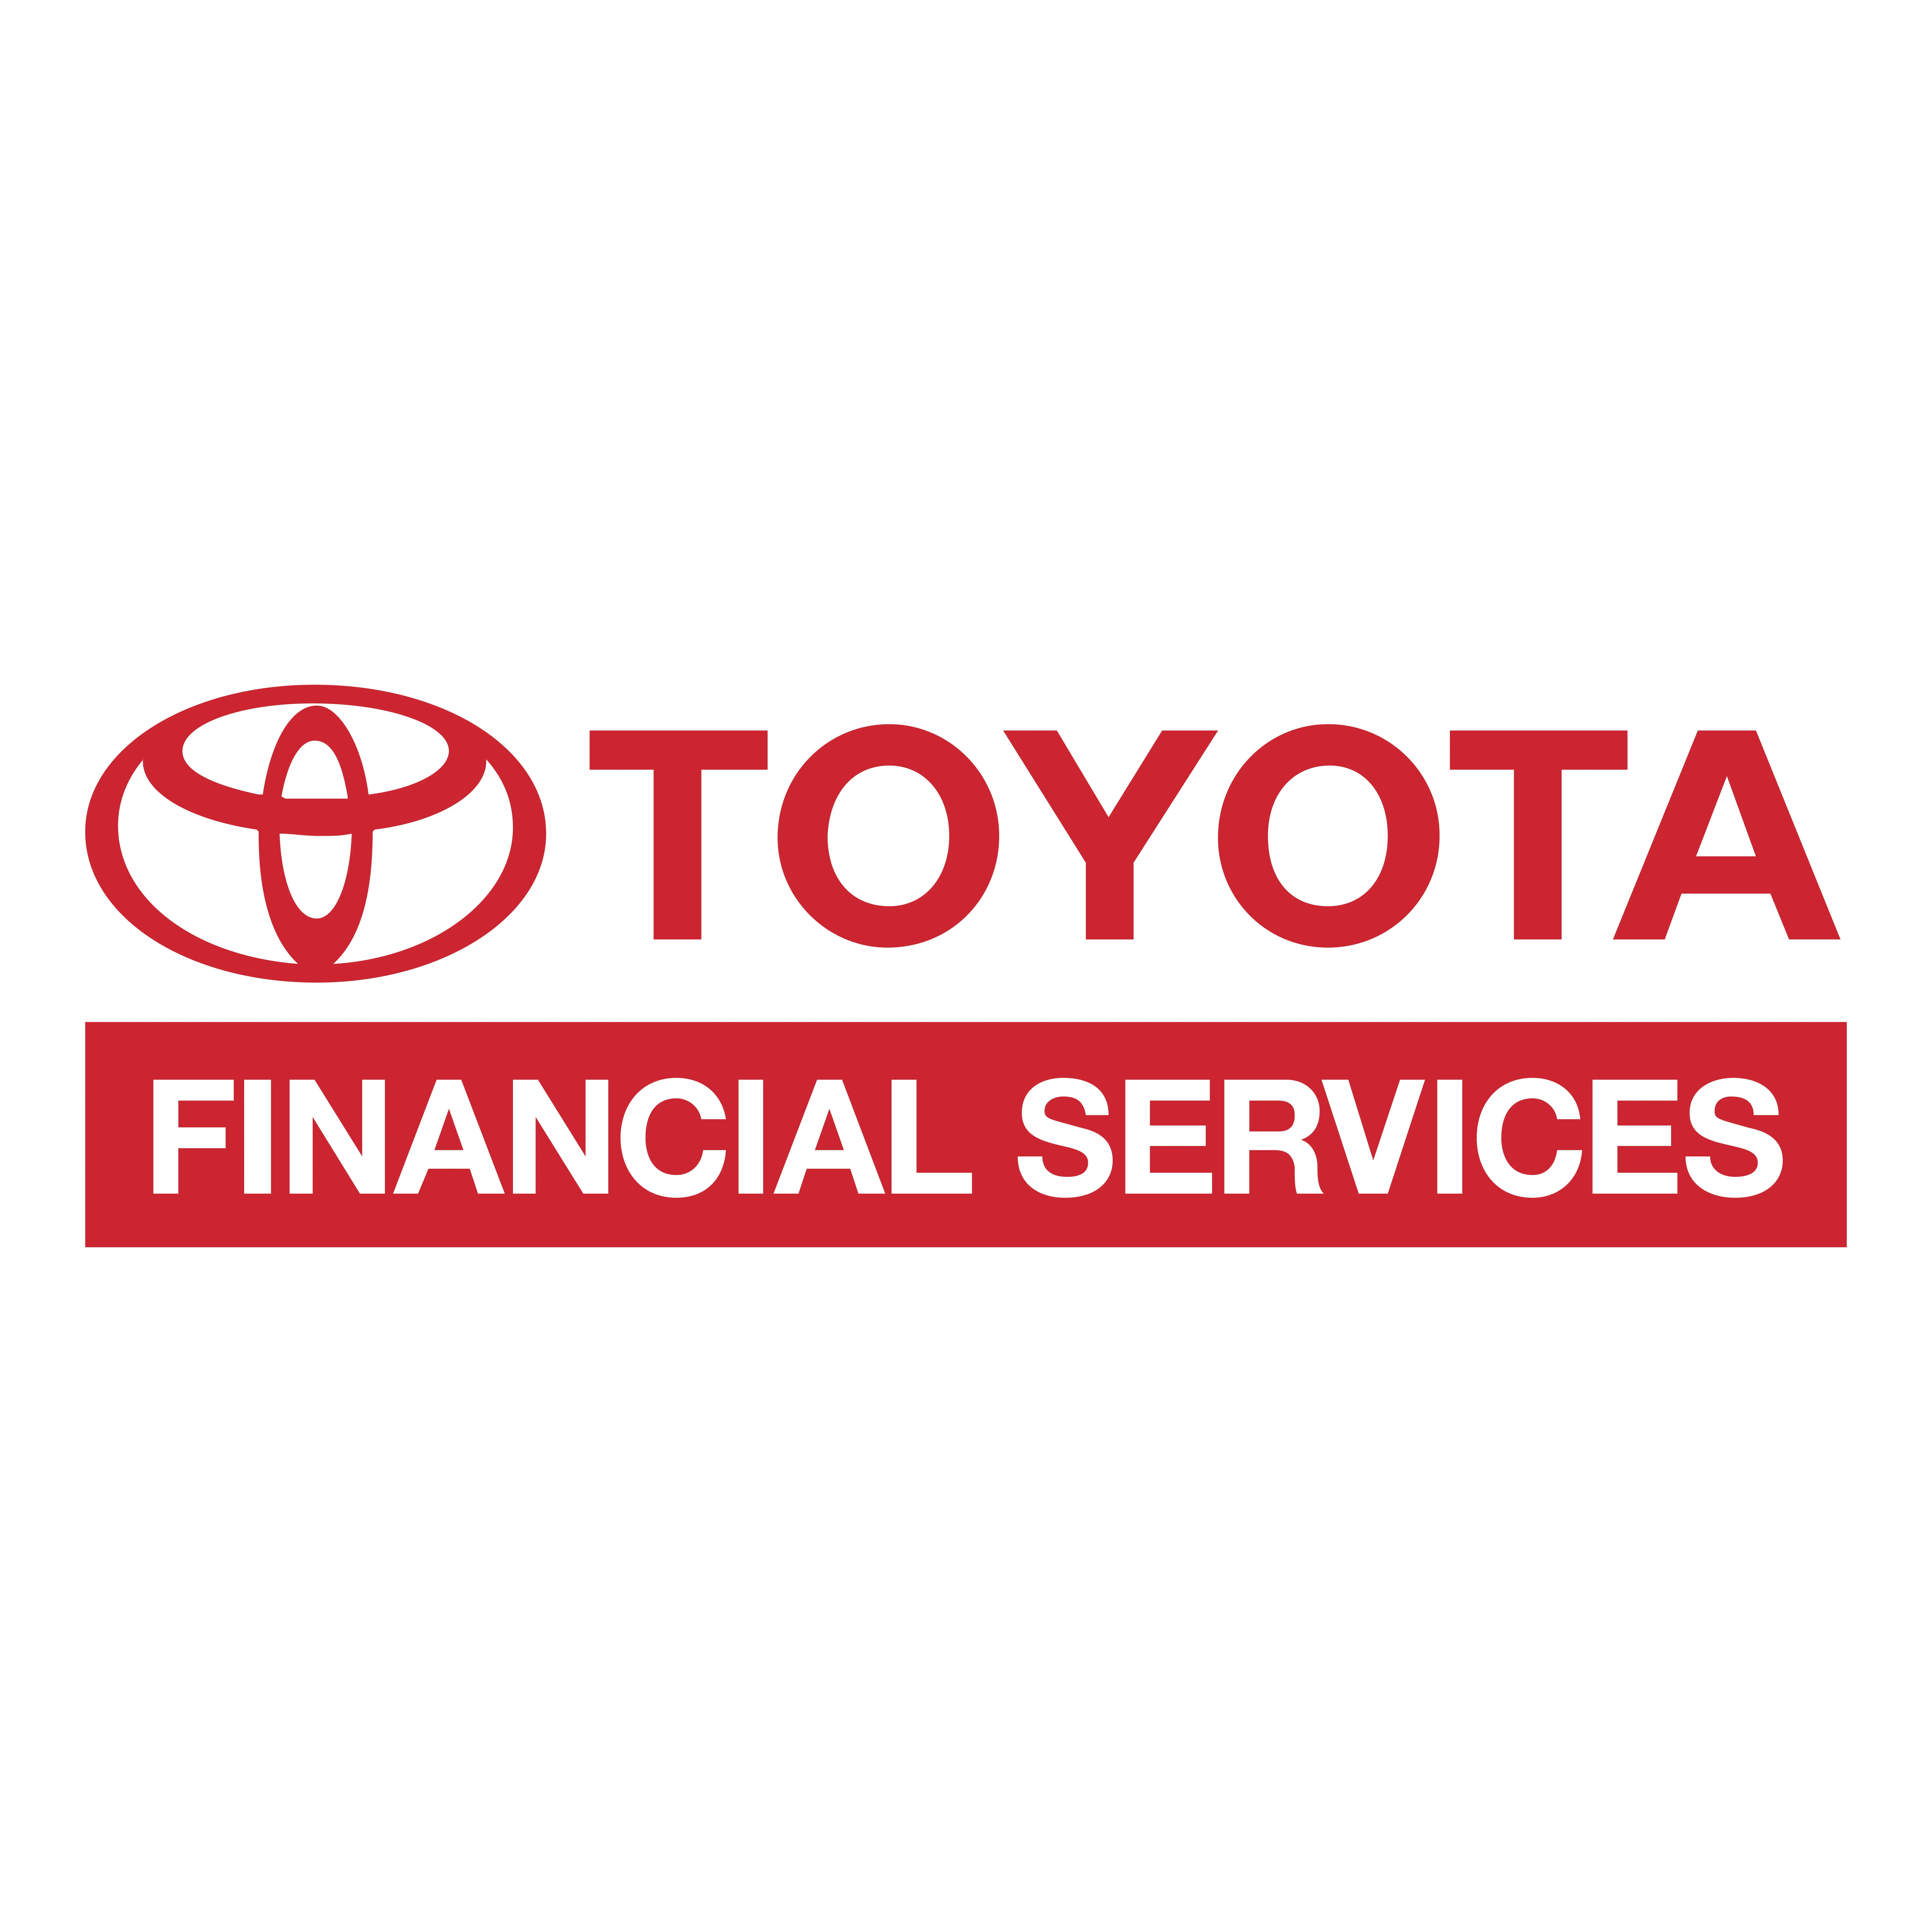 Toyota - Logotipo de servicios financieros